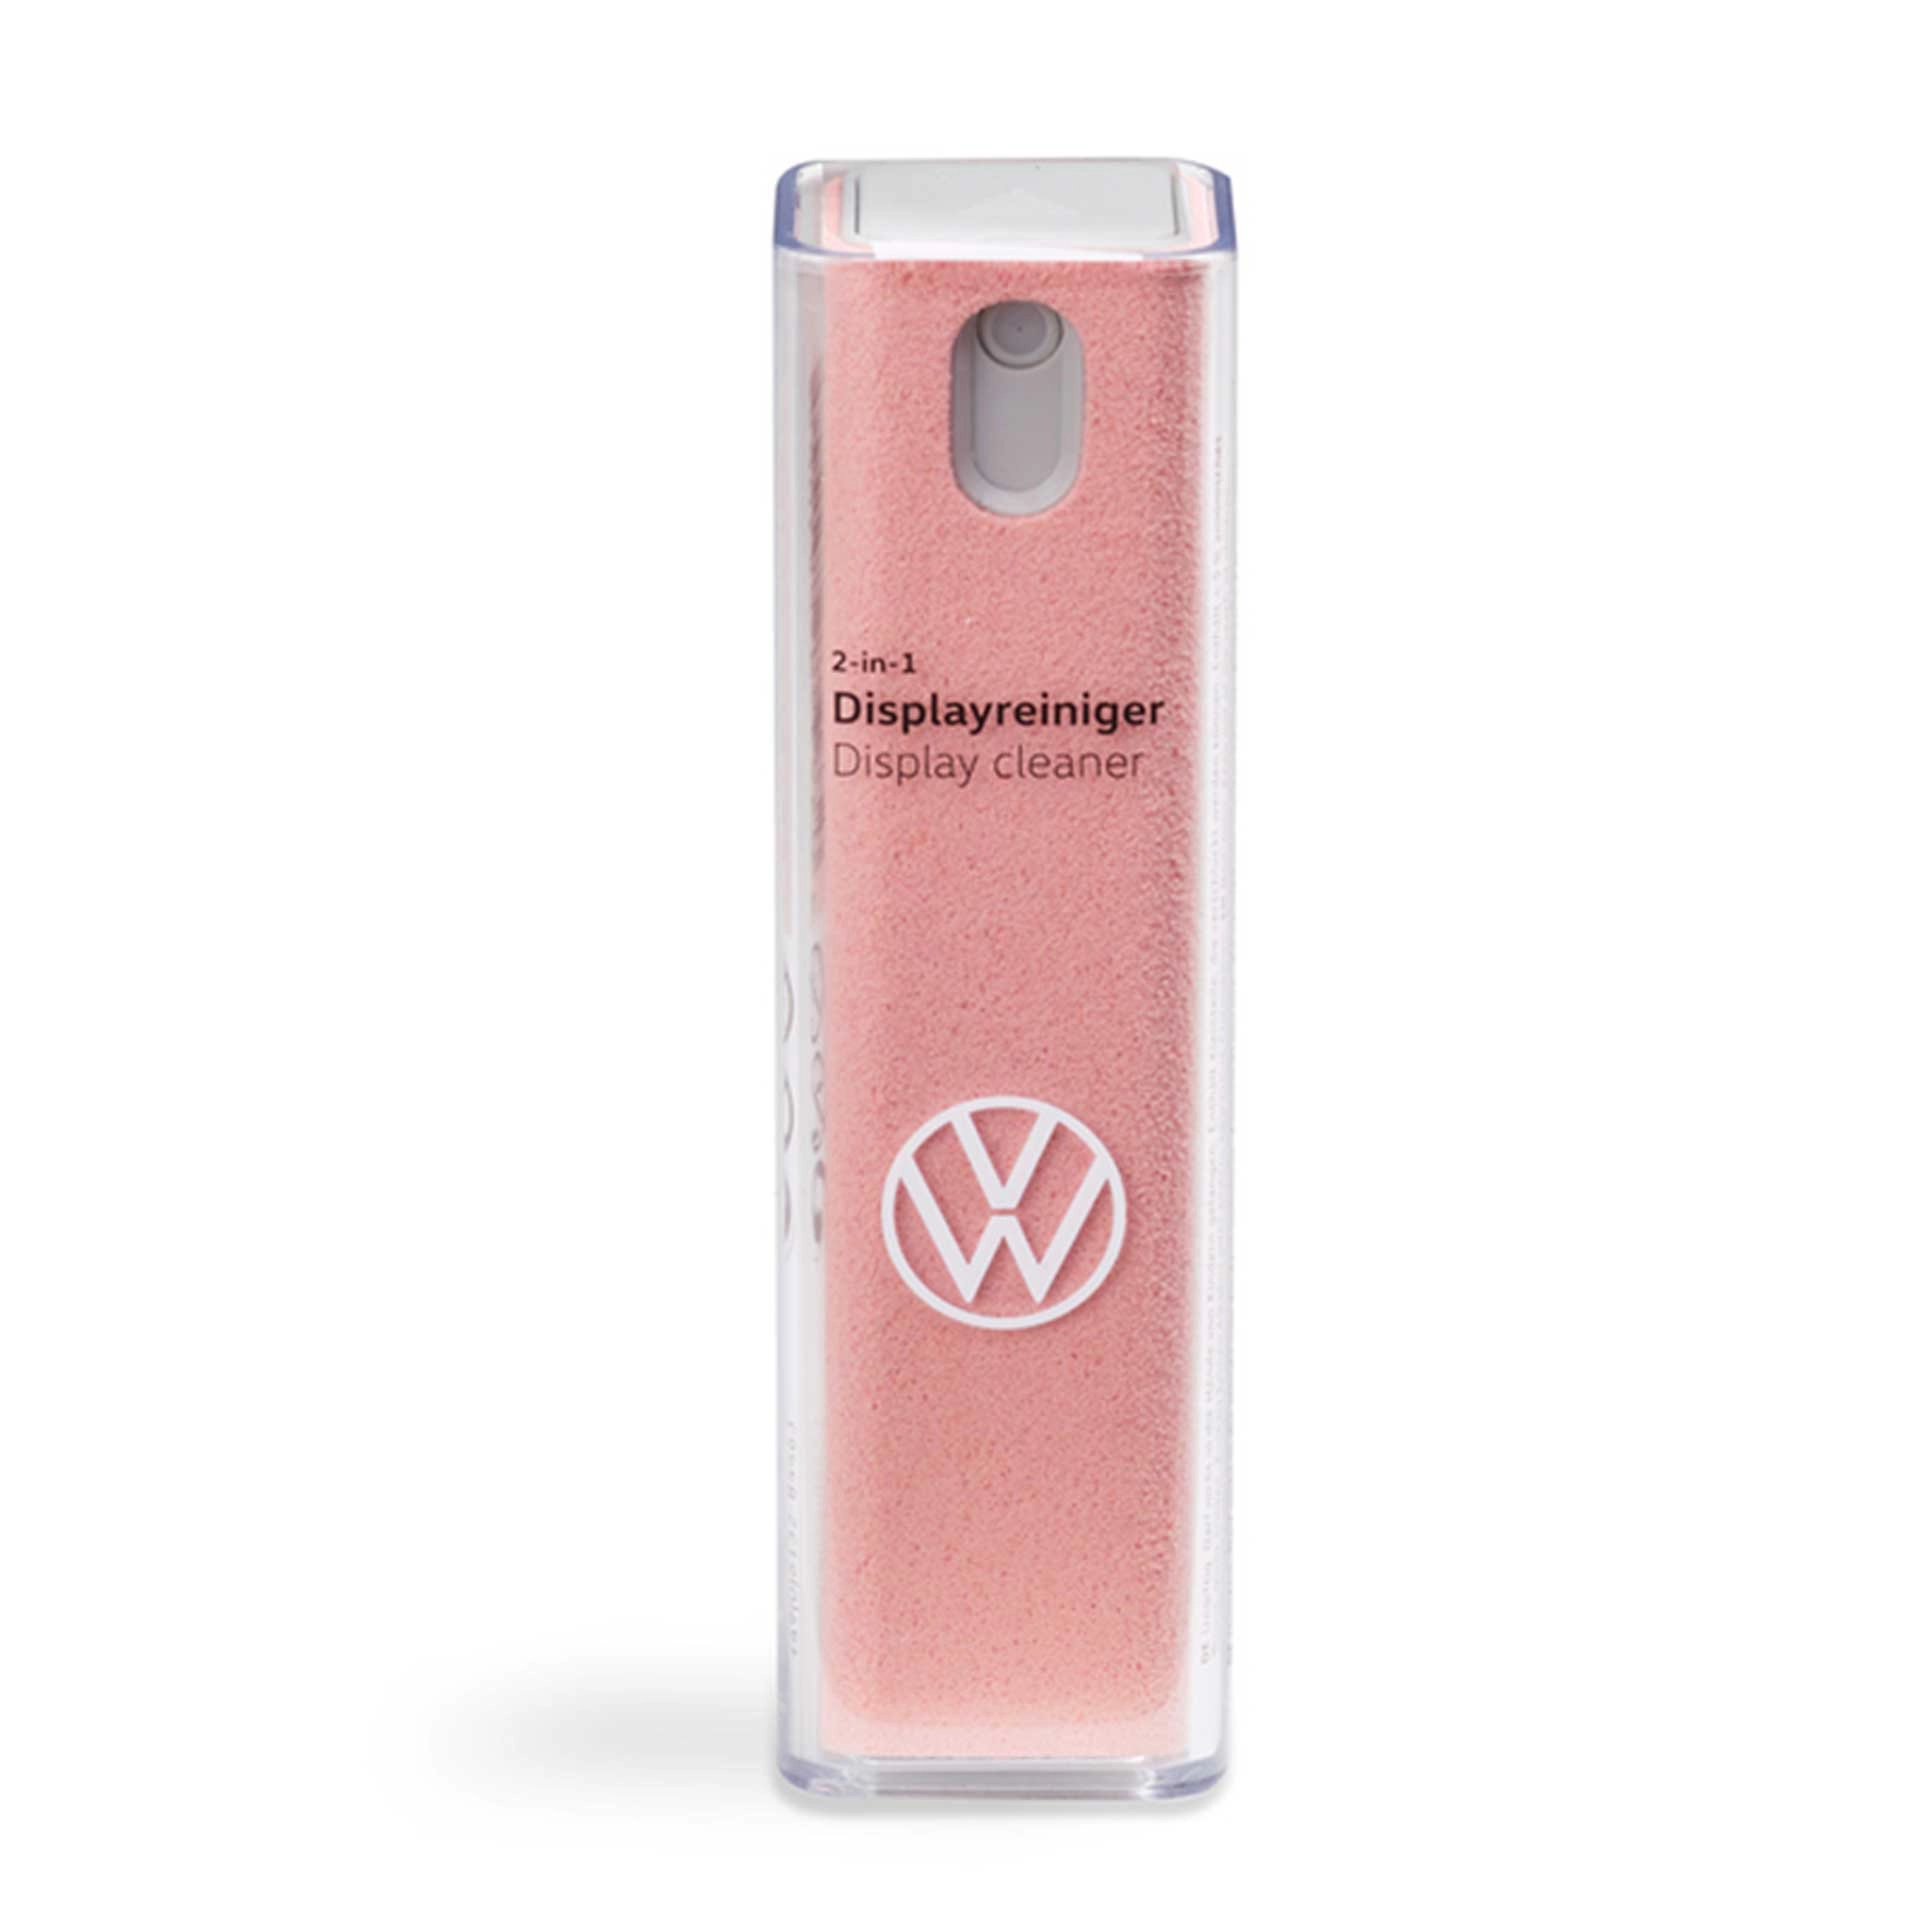 000096311adl19 volkswagen displayreiniger pink rosier onlineshop